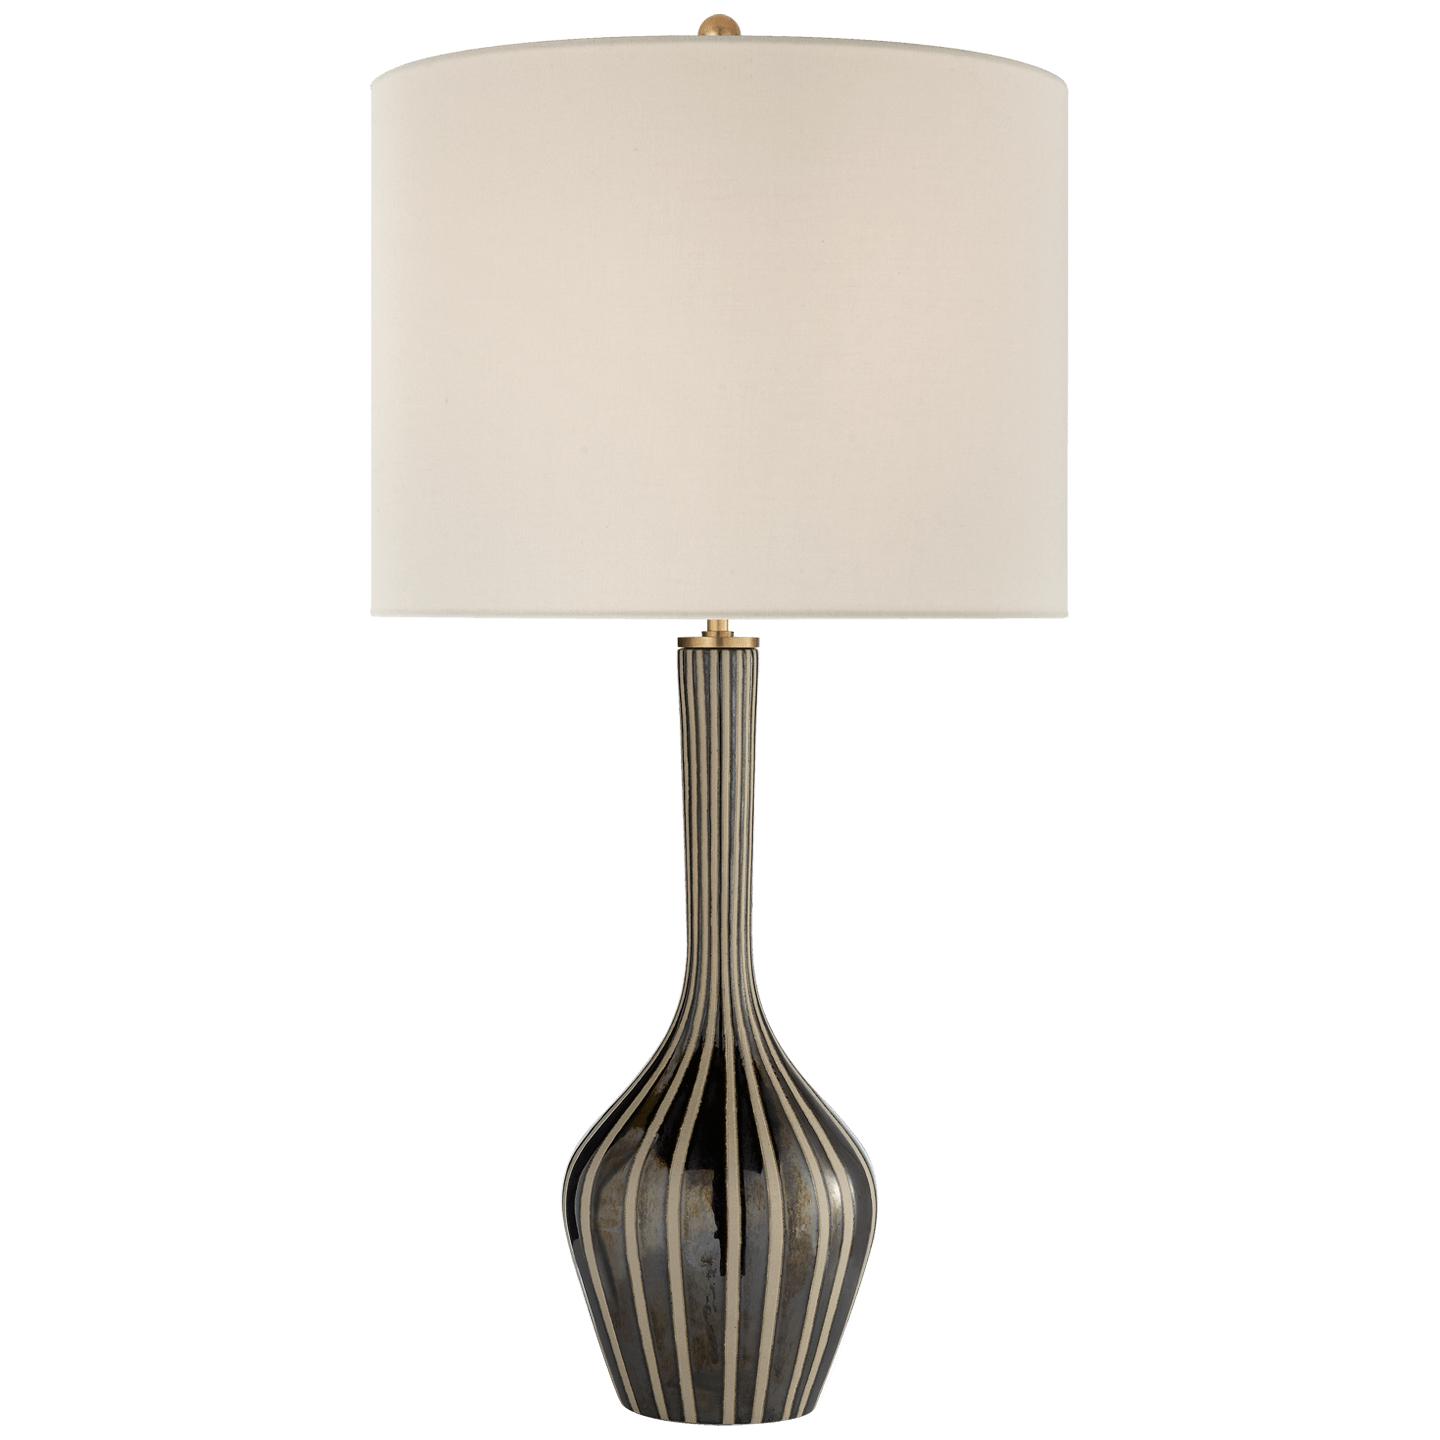 Купить Настольная лампа Parkwood Large Table Lamp в интернет-магазине roooms.ru